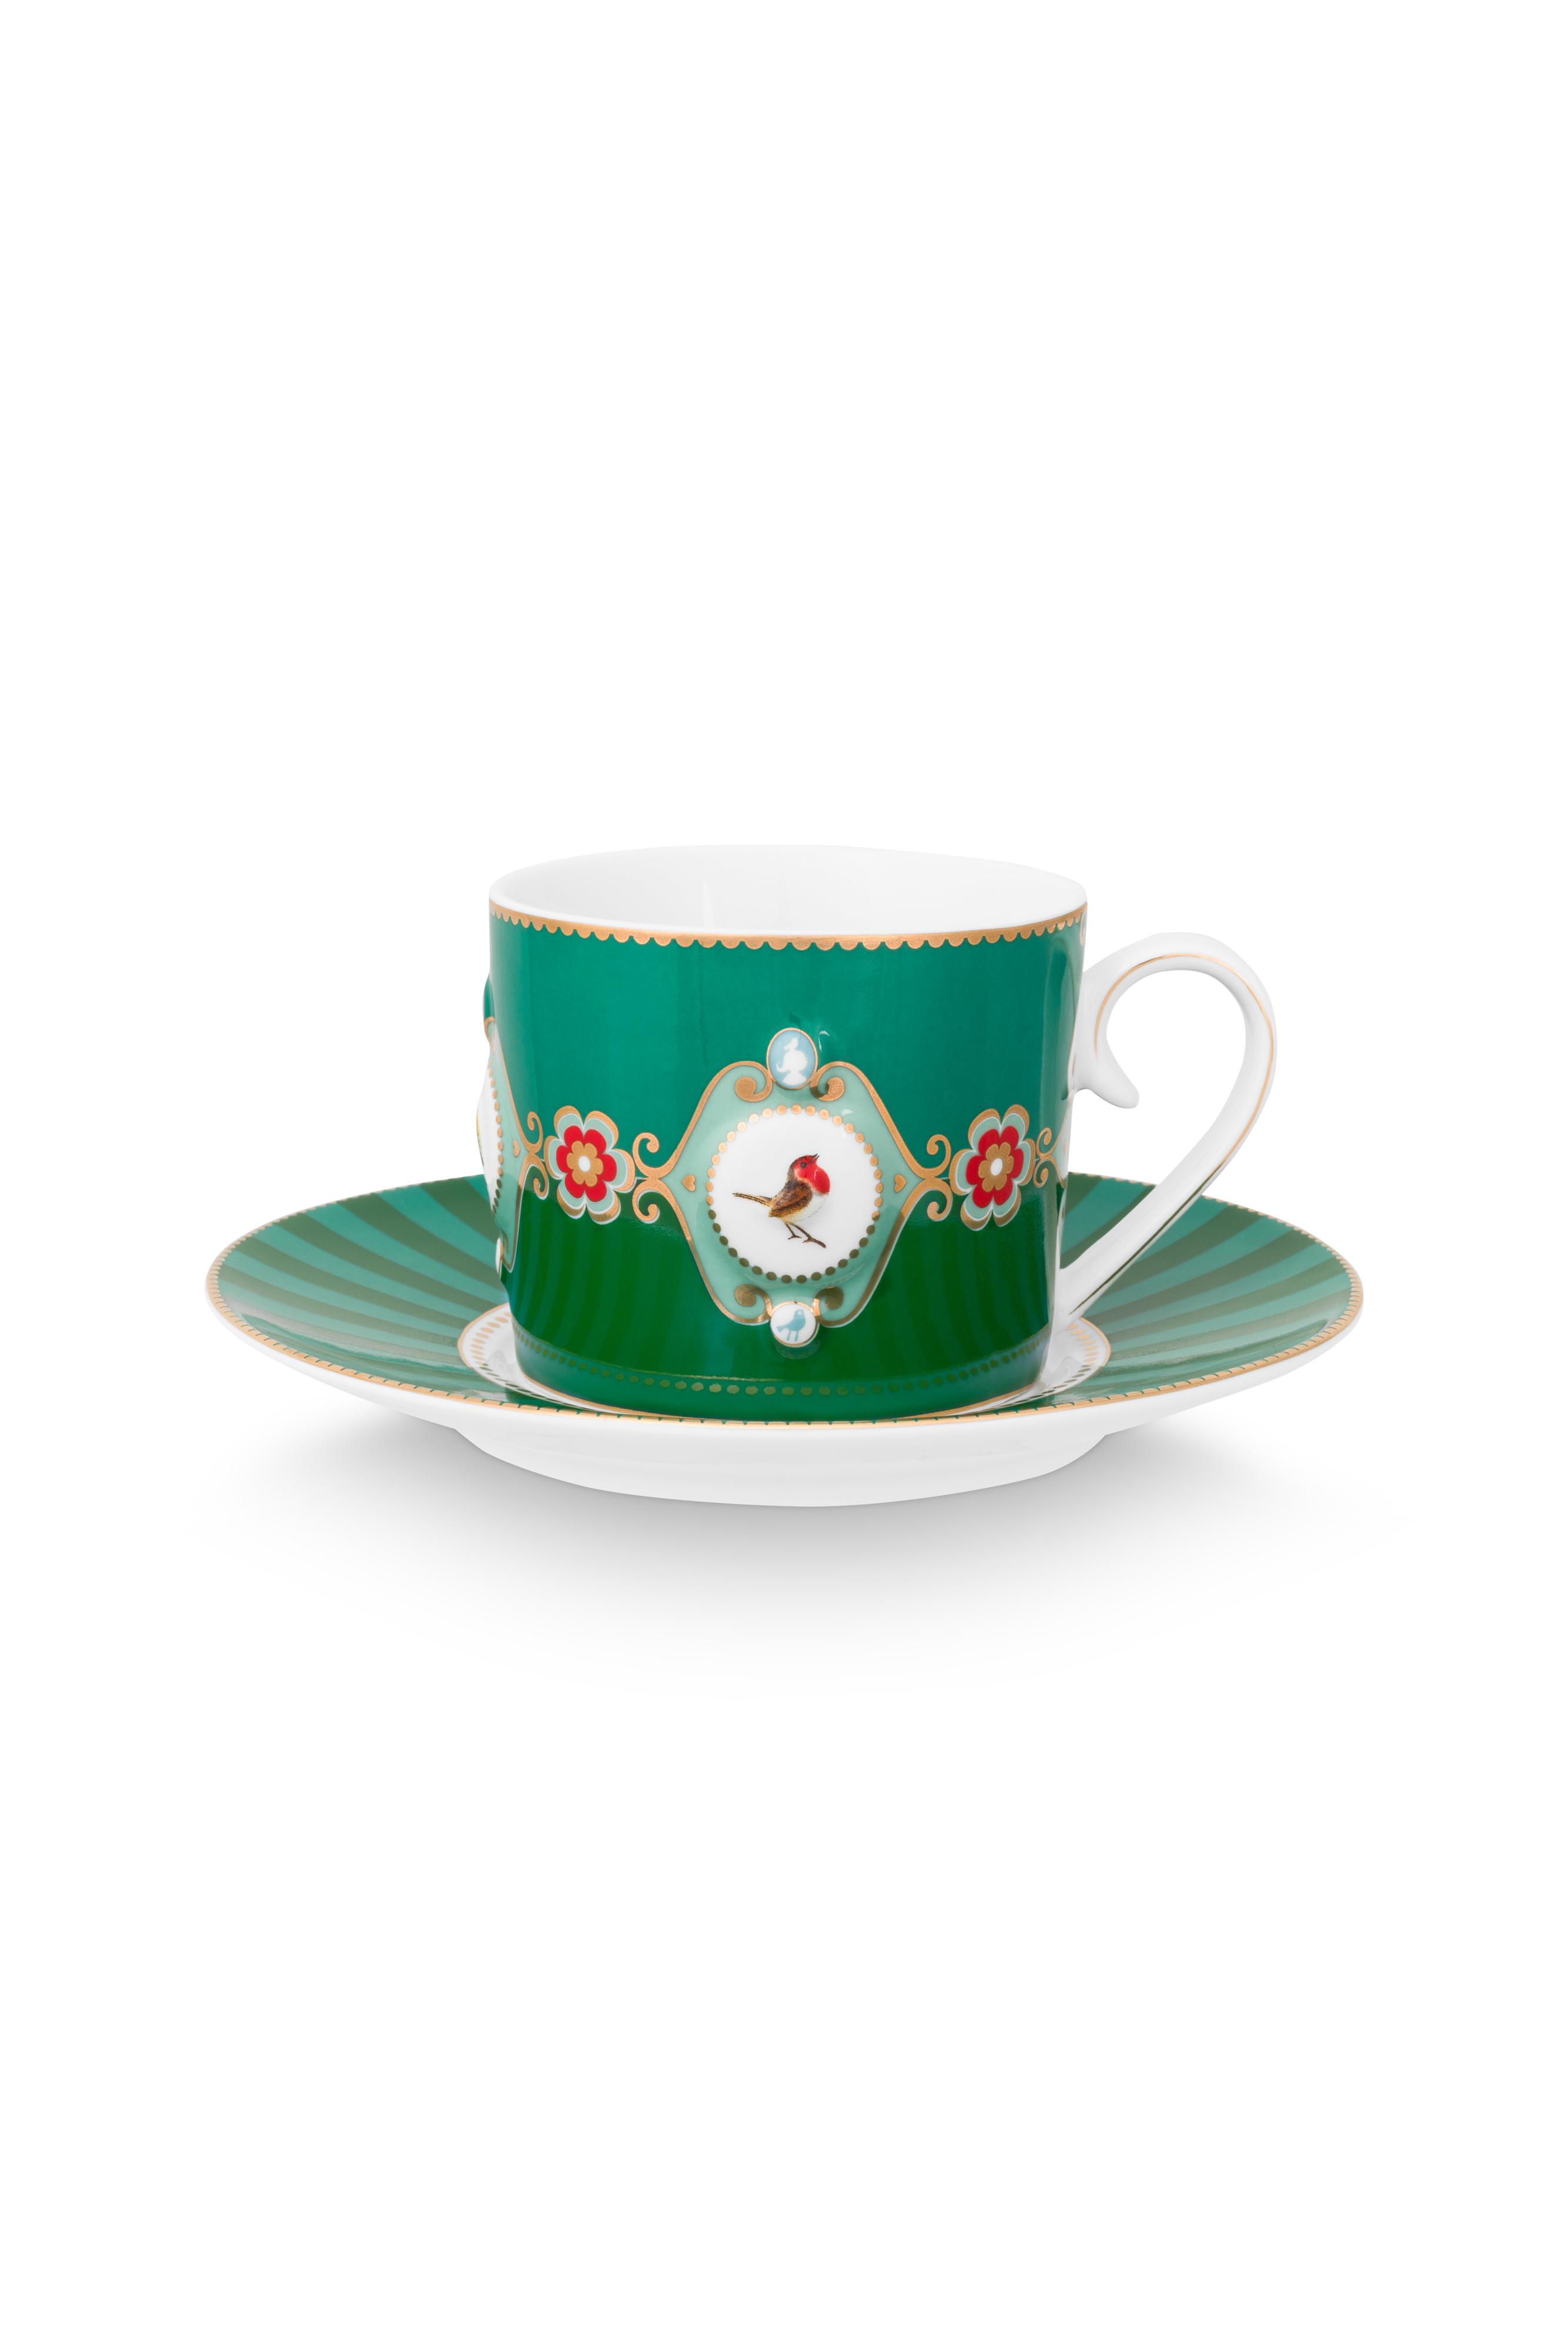 Cup & Saucer Love Birds Medallion Emerald-green 200ml Gift